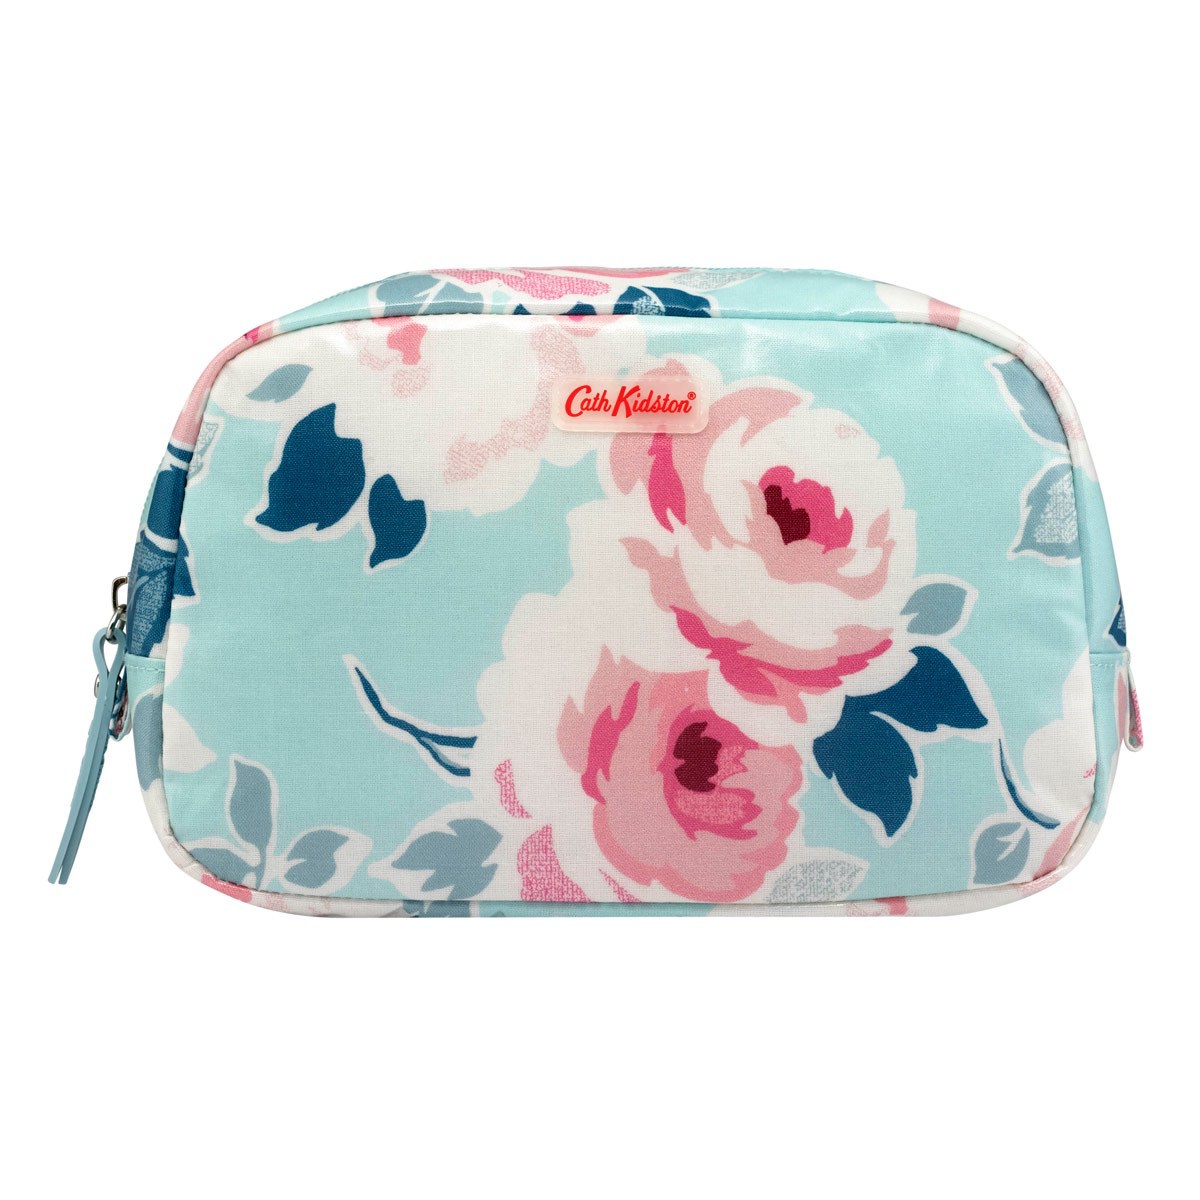 Cath Kidston Cosmetic Bag Paper Rose 